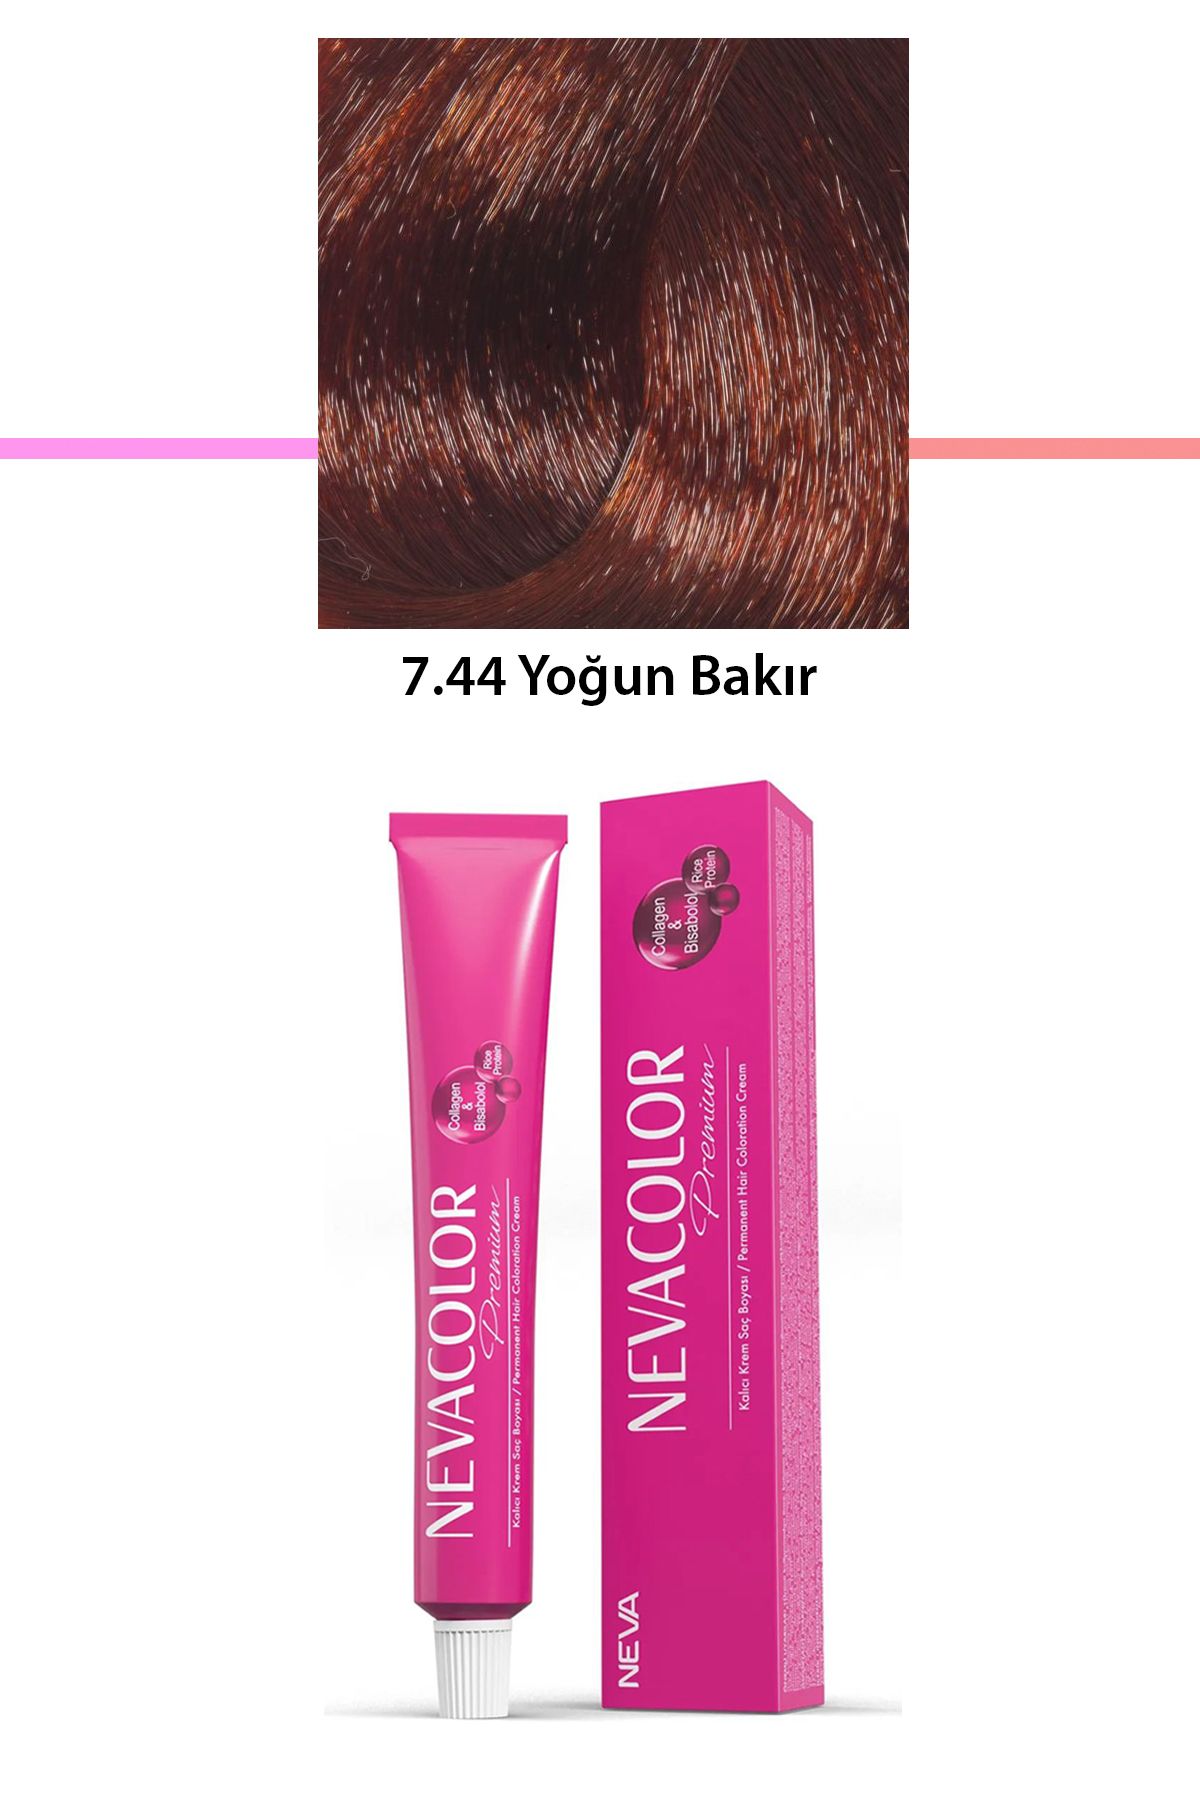 Neva Color Premium 7.44 Yoğun Bakır - Kalıcı Krem Saç Boyası 50 g Tüp